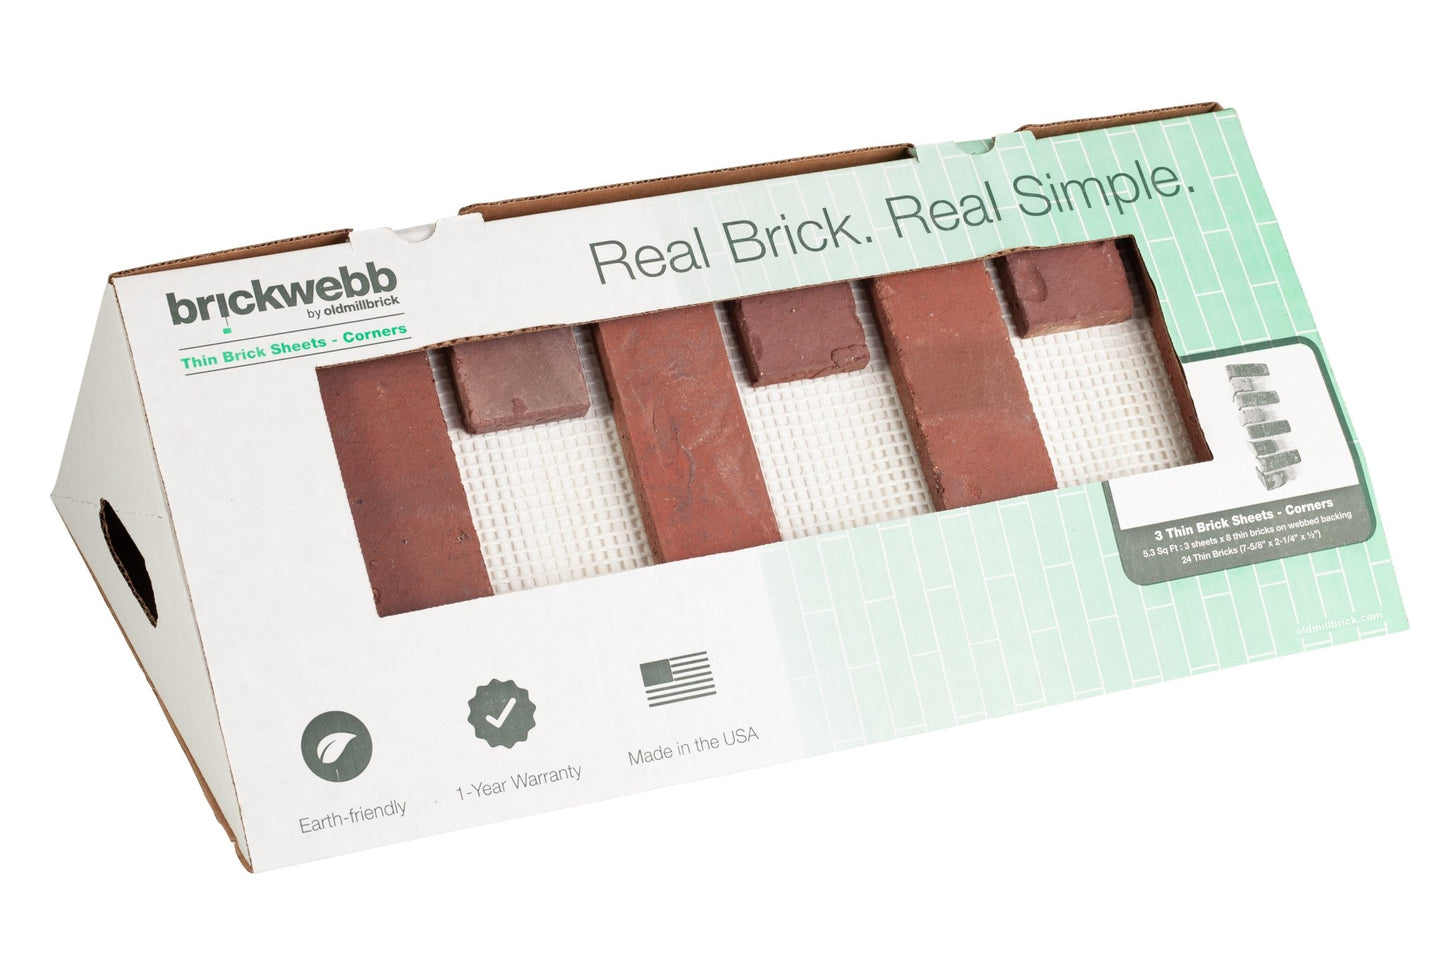 Independence - Brickwebb Sheets